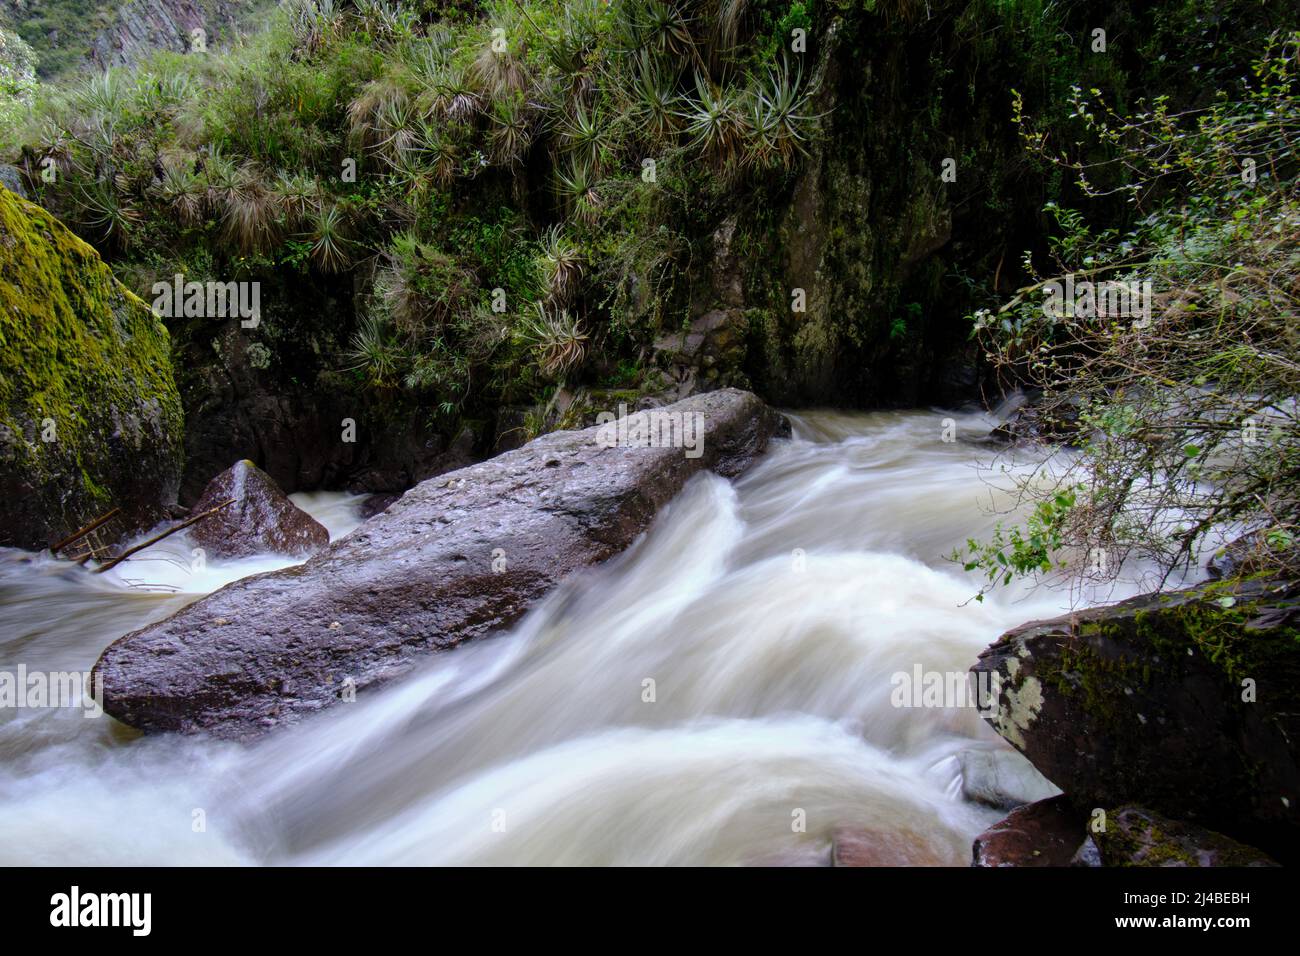 Schöne Landschaft des interandischen Waldes, wo ein Bach aus Wasser fließt, der Wasserfälle und einen kleinen Fluss bildet. Stockfoto